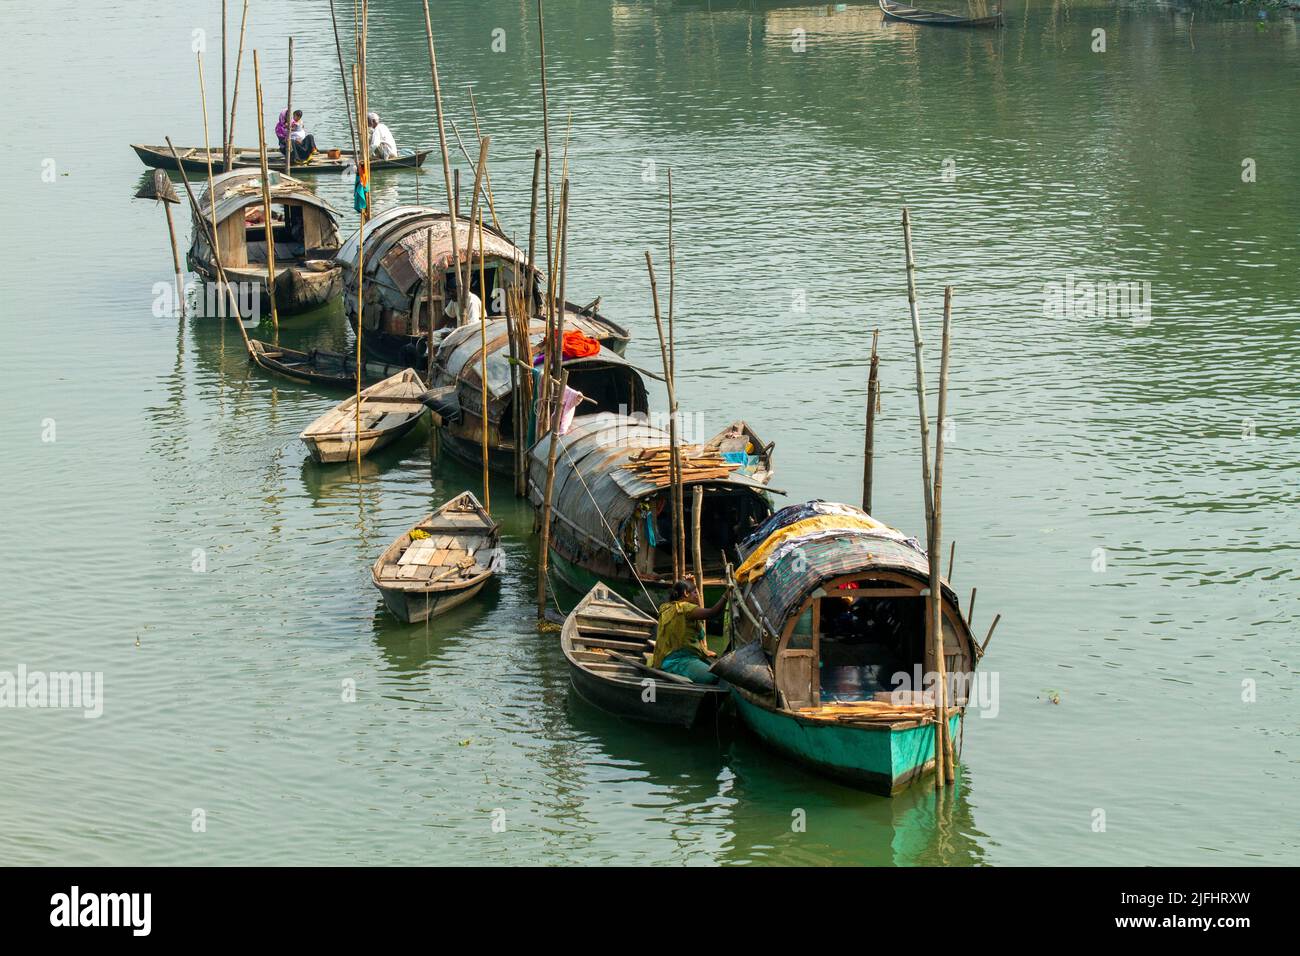 A row of narrowboats belonging to gypsies moored at a canal near Meghna River at Sahapur in Sonargaon, Narayanganj, Bangladesh. Stock Photo